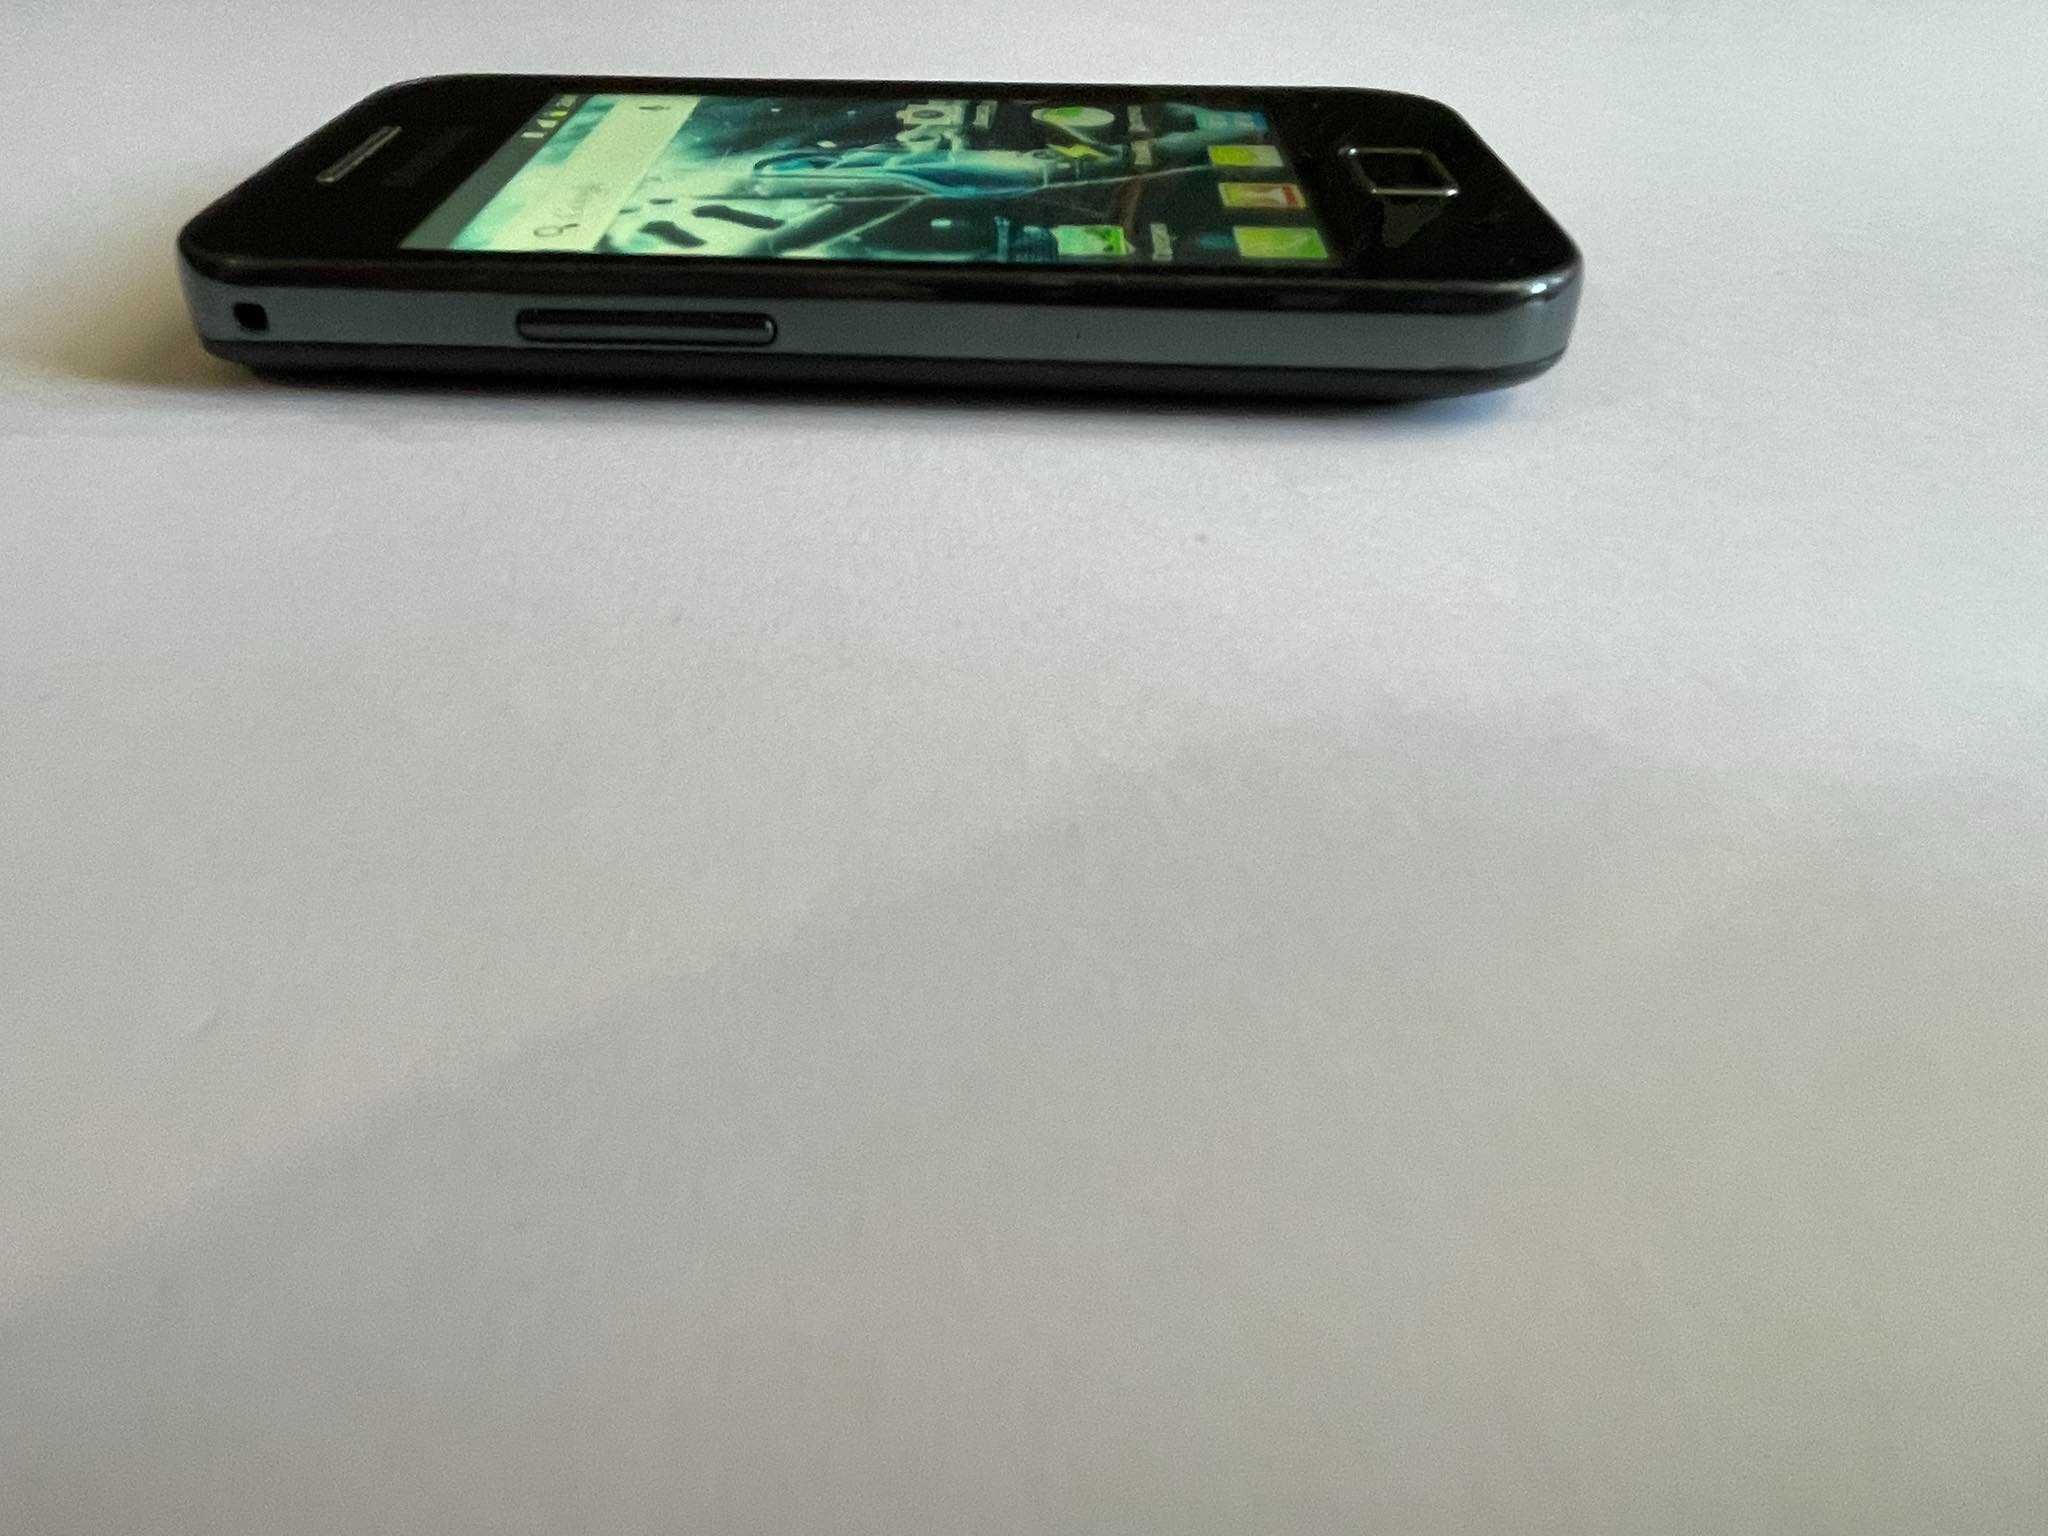 Samsung Galaxy Ace GT-S5830i - като нов! + подарък!